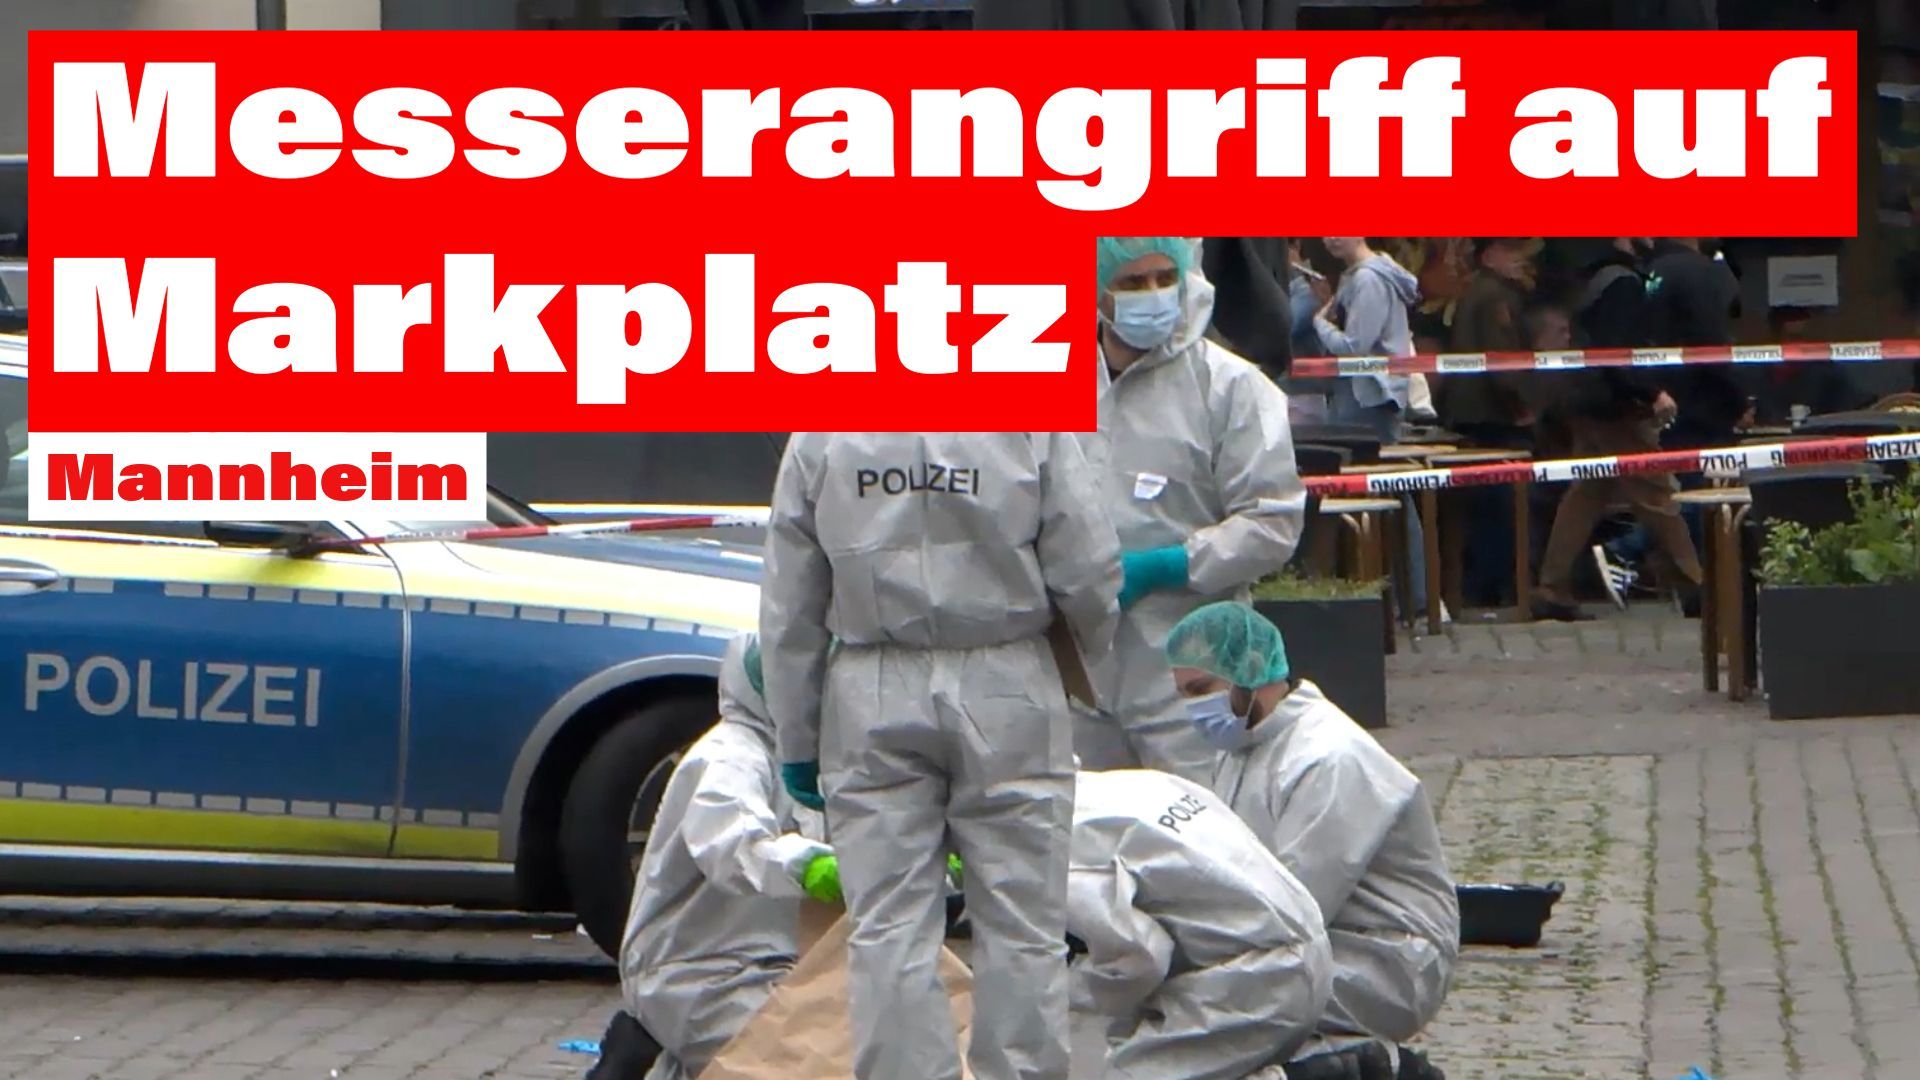 Messerangriff auf dem Mannheimer Markplatz fordert mehrere Verletzte - Polizsit schwebt in Lebensgefahr